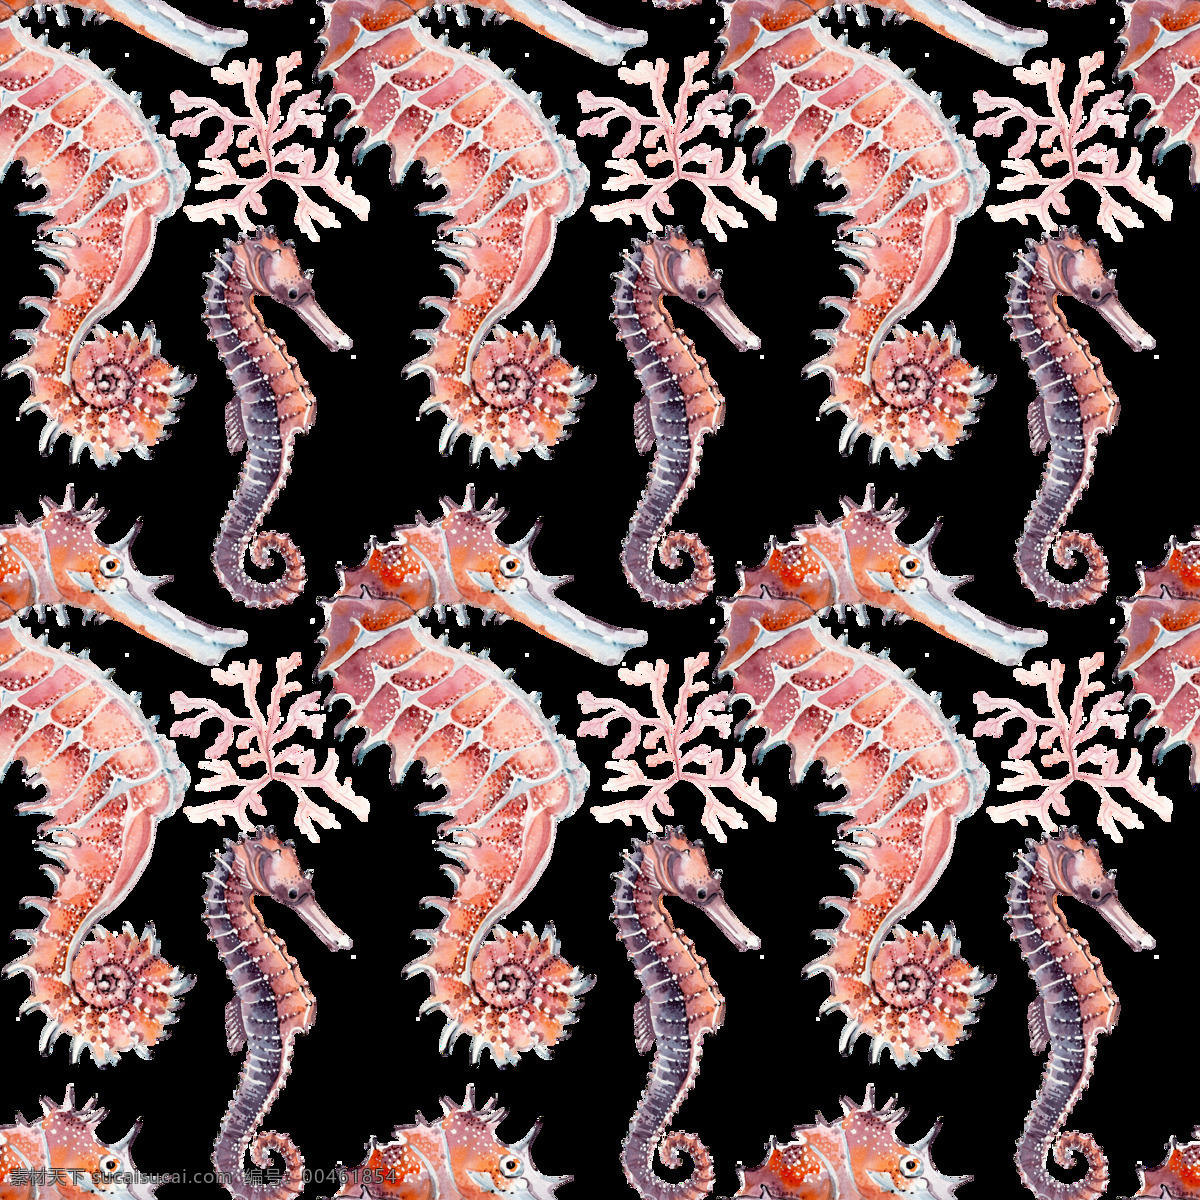 手绘 深海 海马 背景 图 背景素材 灰色 卡通 欧洲 藕粉色 平铺背景 深海生物 药引